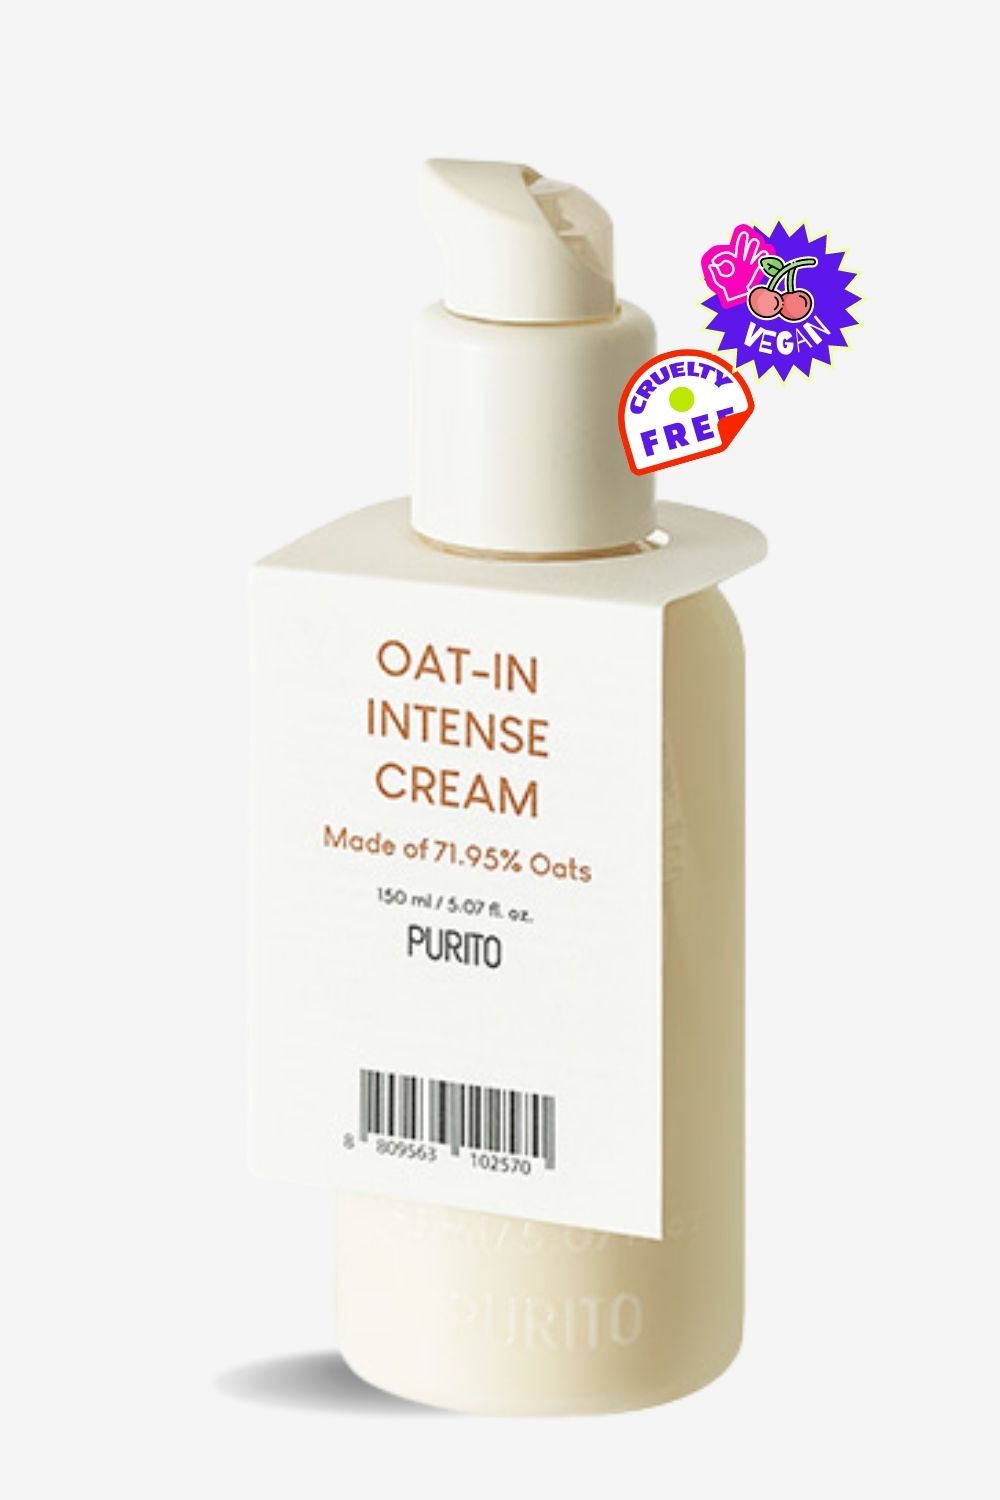 Purito - Oat-in Intense Cream - 150ml